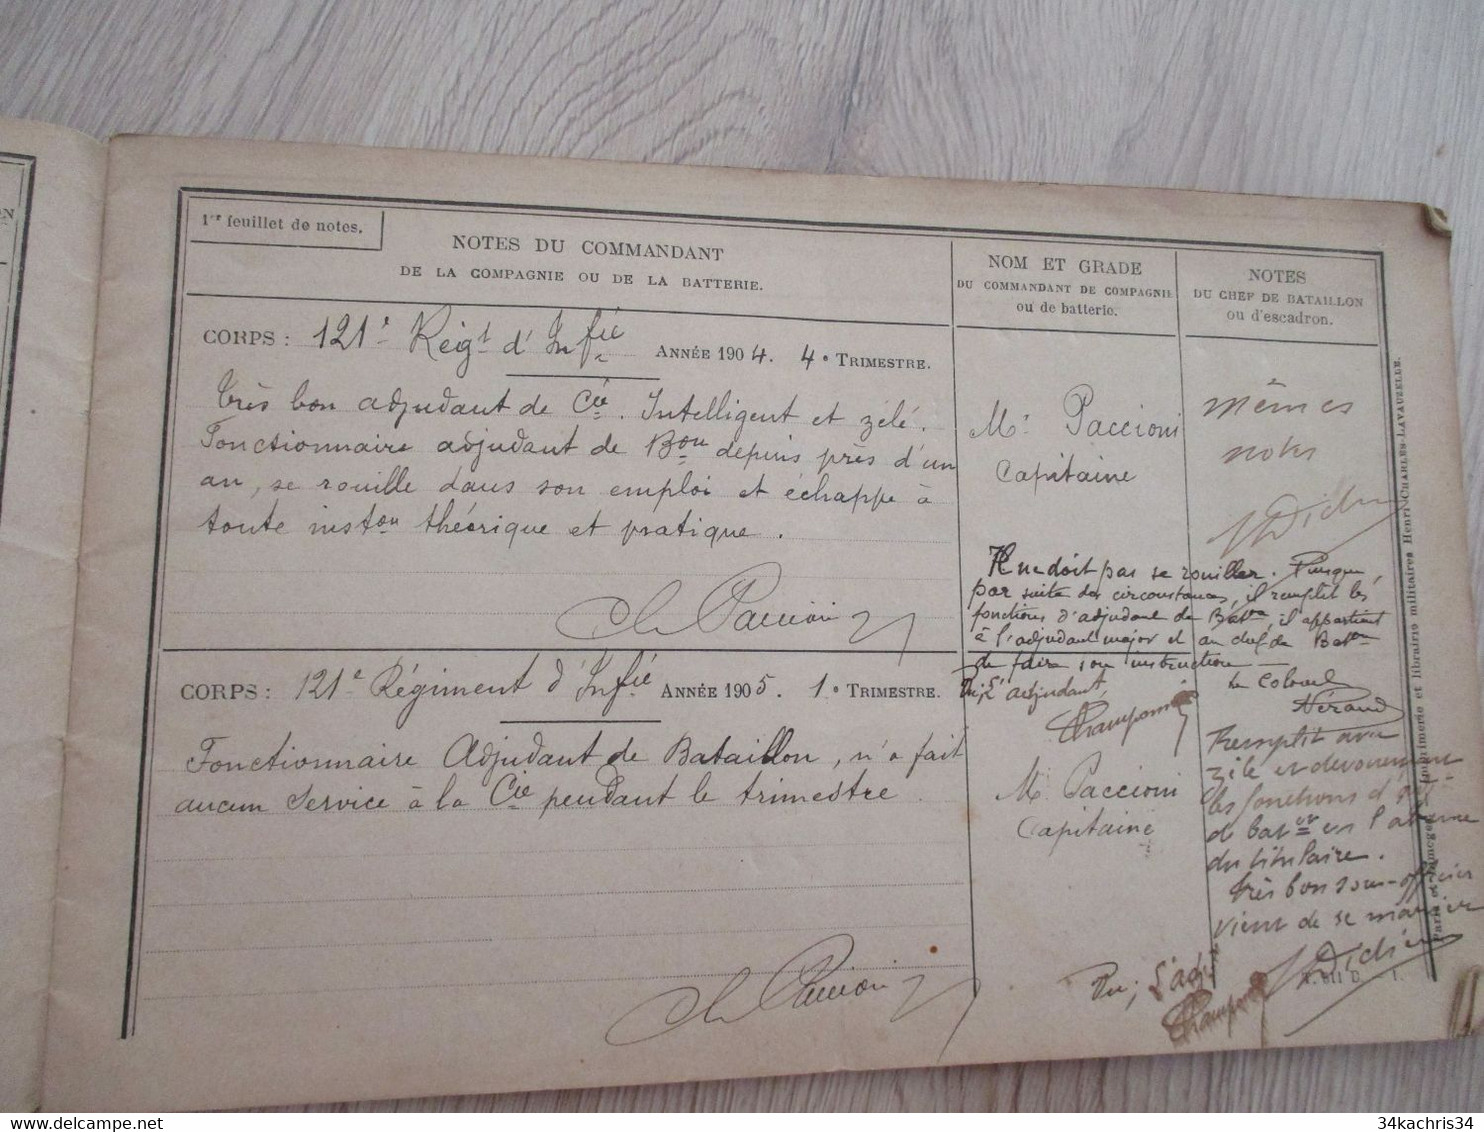 Rare 121 ème Régiment Infanterie Avec Photo Champonnier Carnet De Notes 12 P Manuscrites De Commentaires Su Officier.... - Documenten